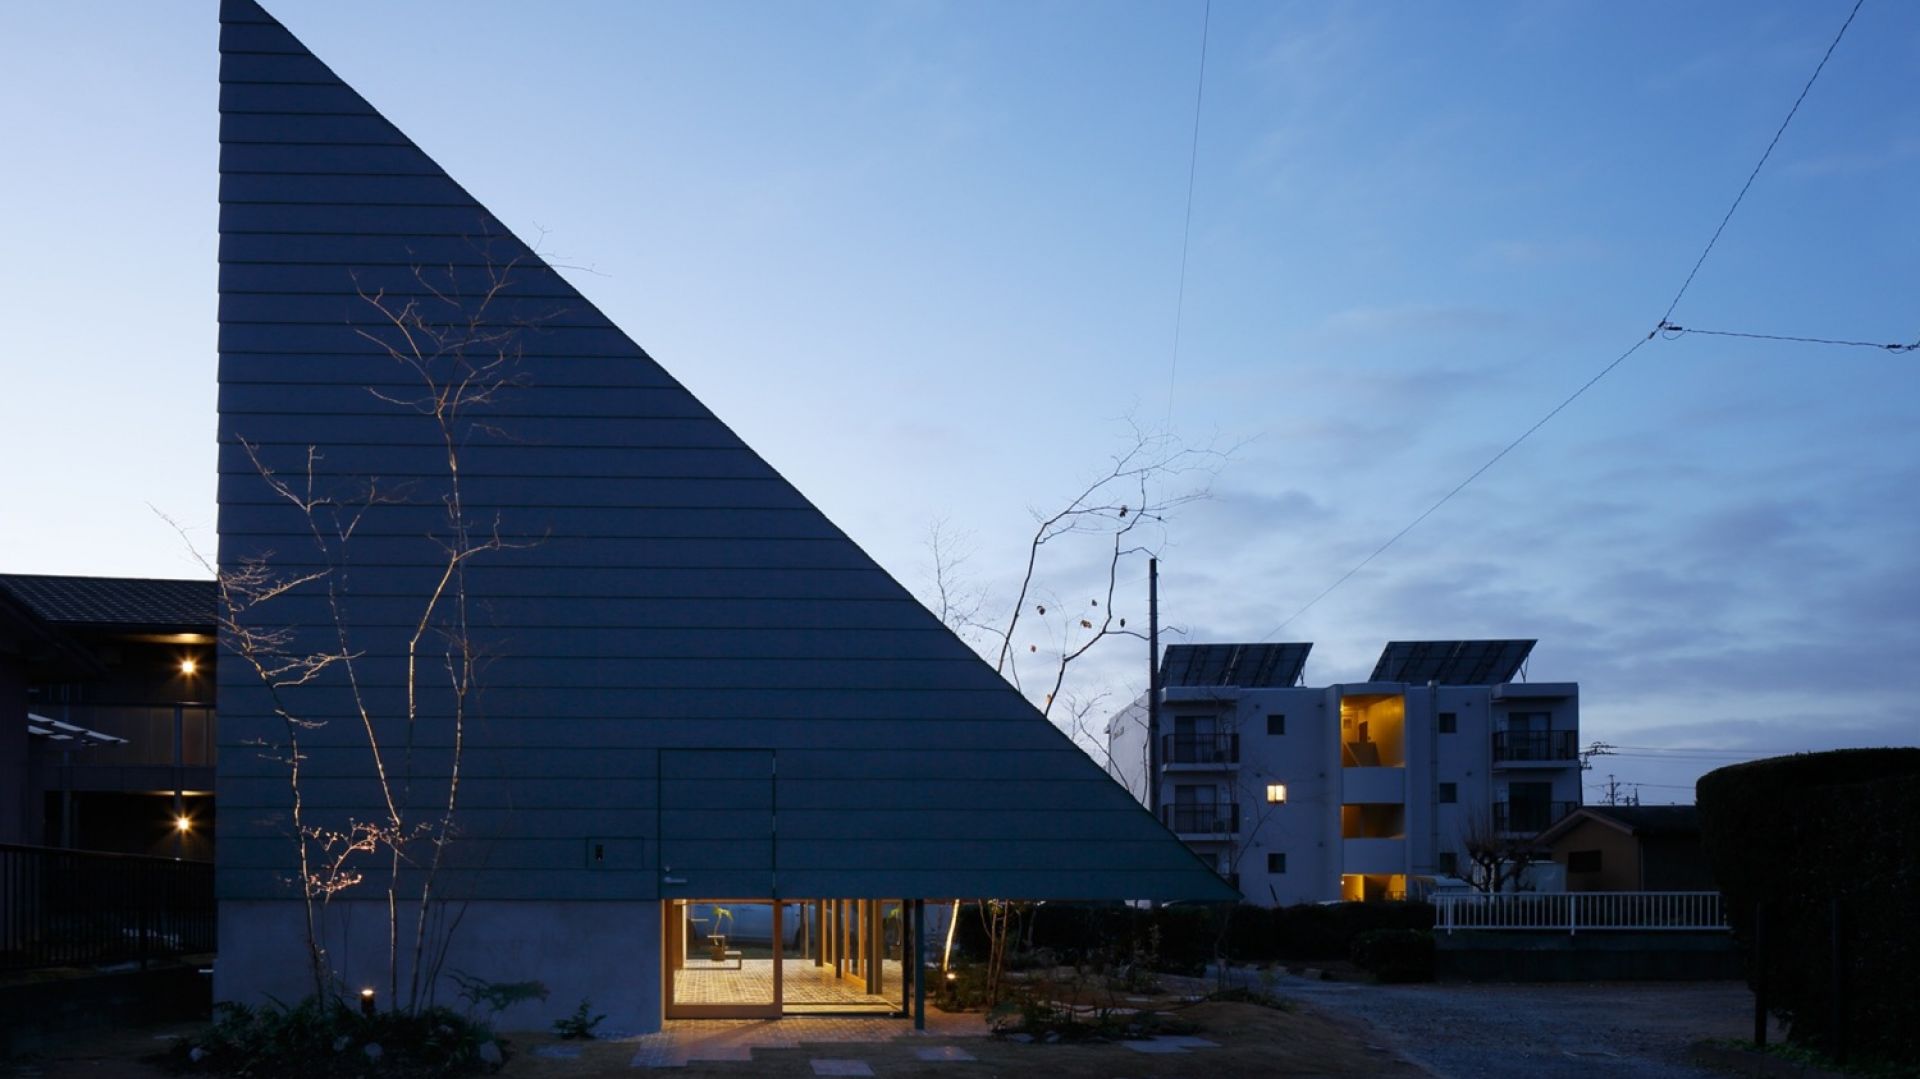 Japoński dom "trójkąt" z otwartym ogrodem pod dachem 71 mkw